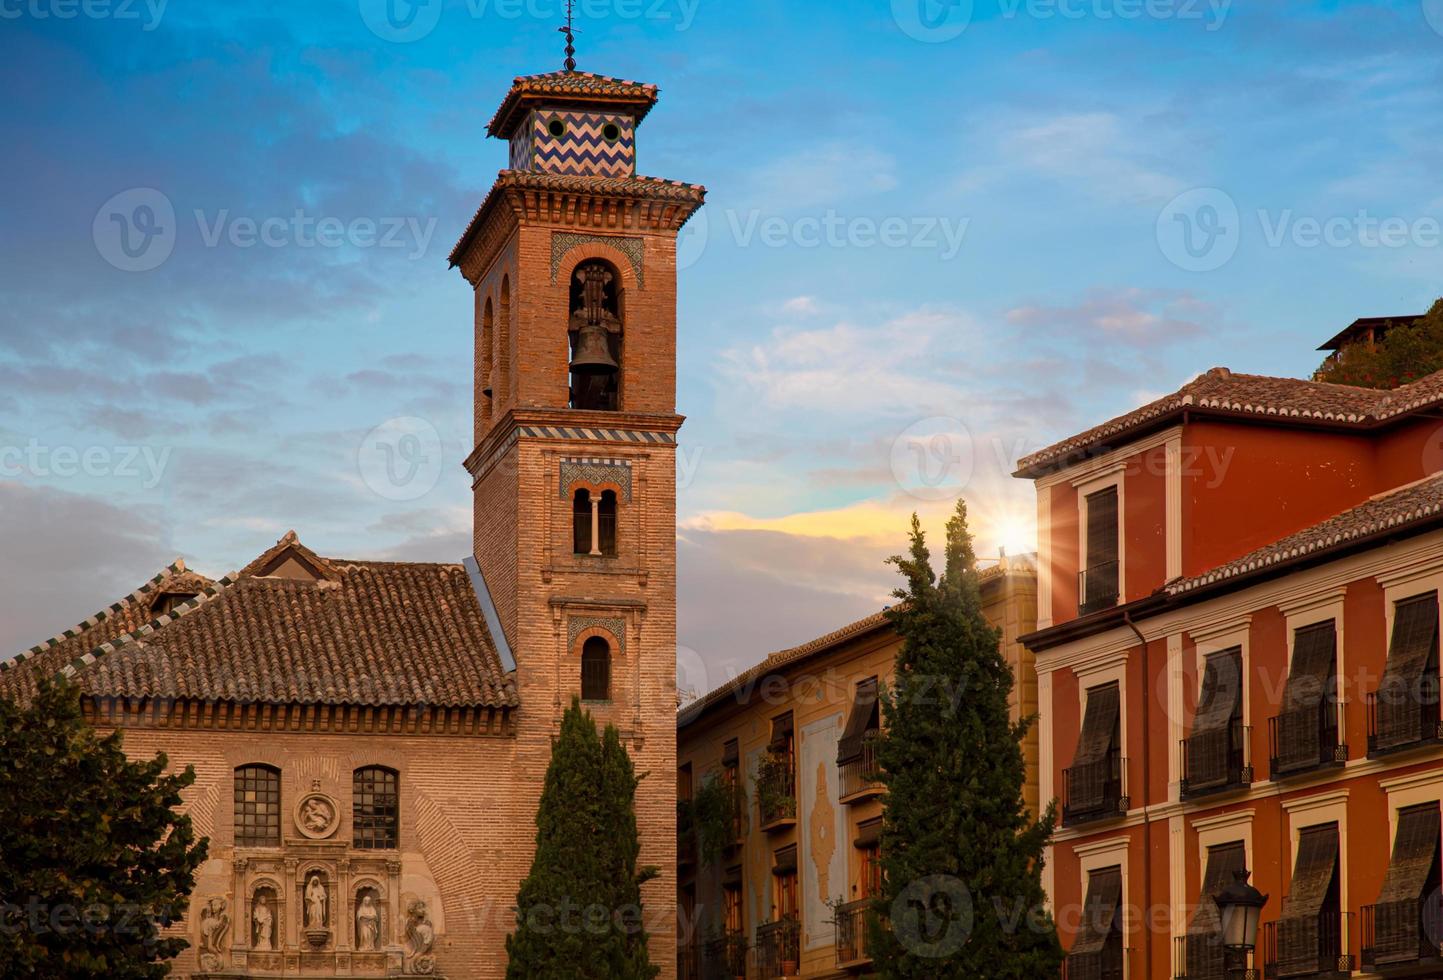 Spain, Granada streets and Spanish architecture in a scenic historic city center photo